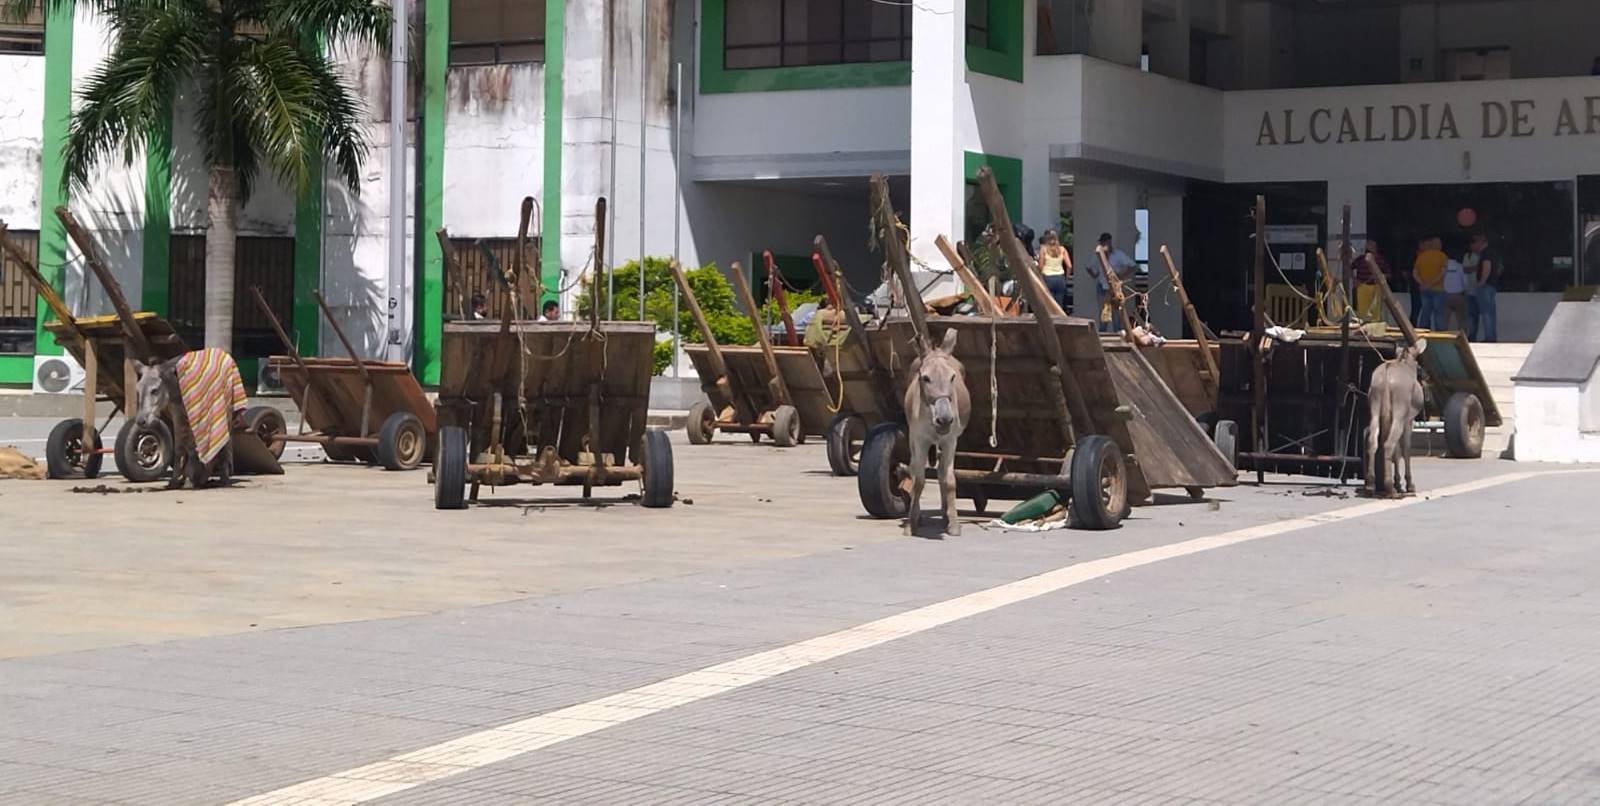 ¿UNA PROTESTA INJUSTA? propietarios de vehículos de tracción animal llevan 4 días de manifestación frente a la alcaldía de Arauca